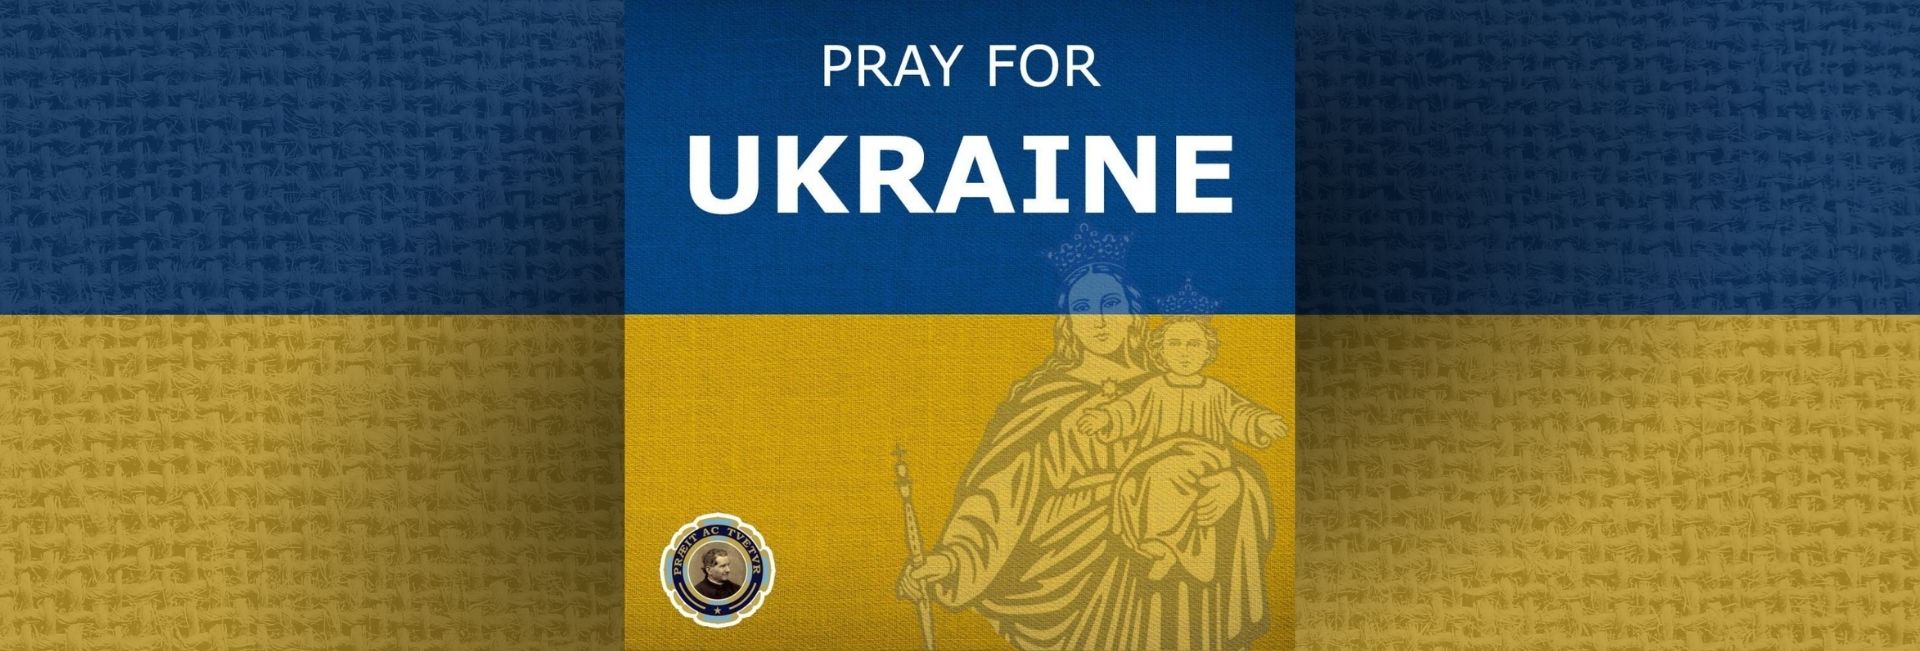 Italia – L’appello degli Exallievi per chiedere aiuti e preghiere per l’Ucraina